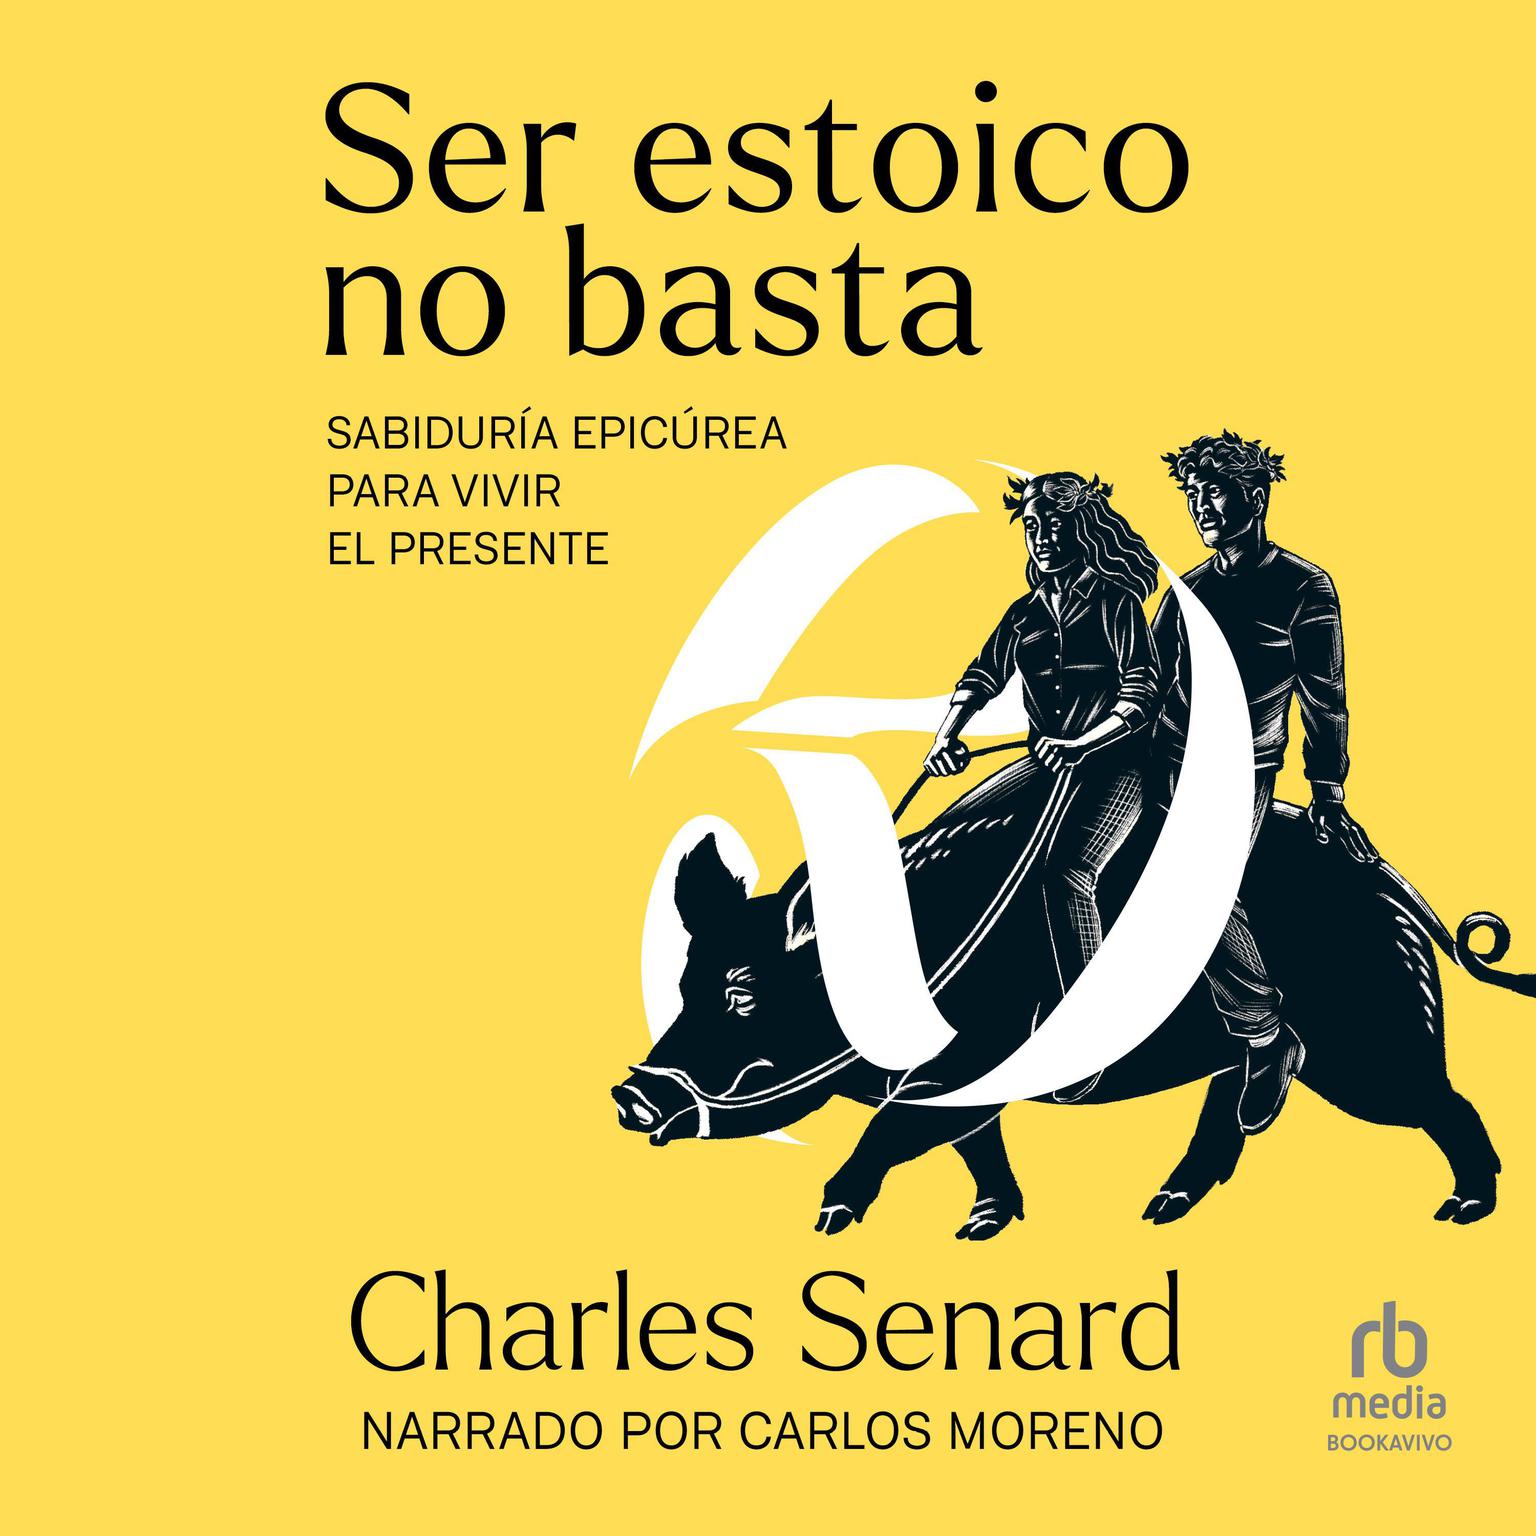 Ser estoico no basta (Being Stoic is Not Enough): Sabiduría epicúrea para vivir el presente Audiobook, by Charles Senard